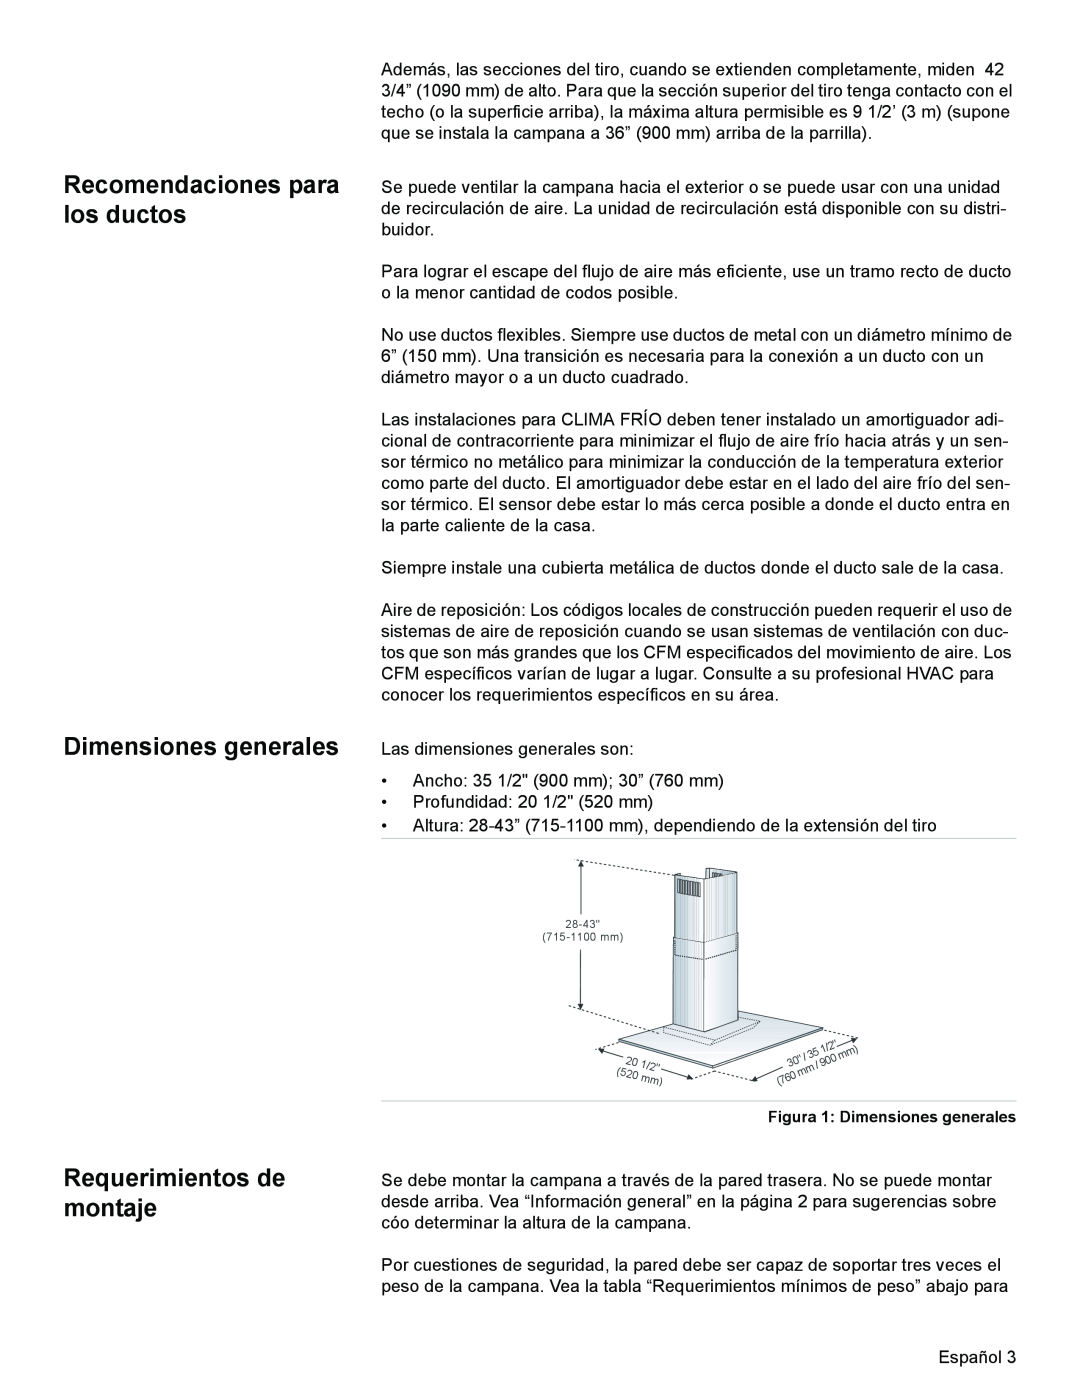 Bosch Appliances DKE96 installation manual Recomendaciones para los ductos Dimensiones generales, Requerimientos de montaje 